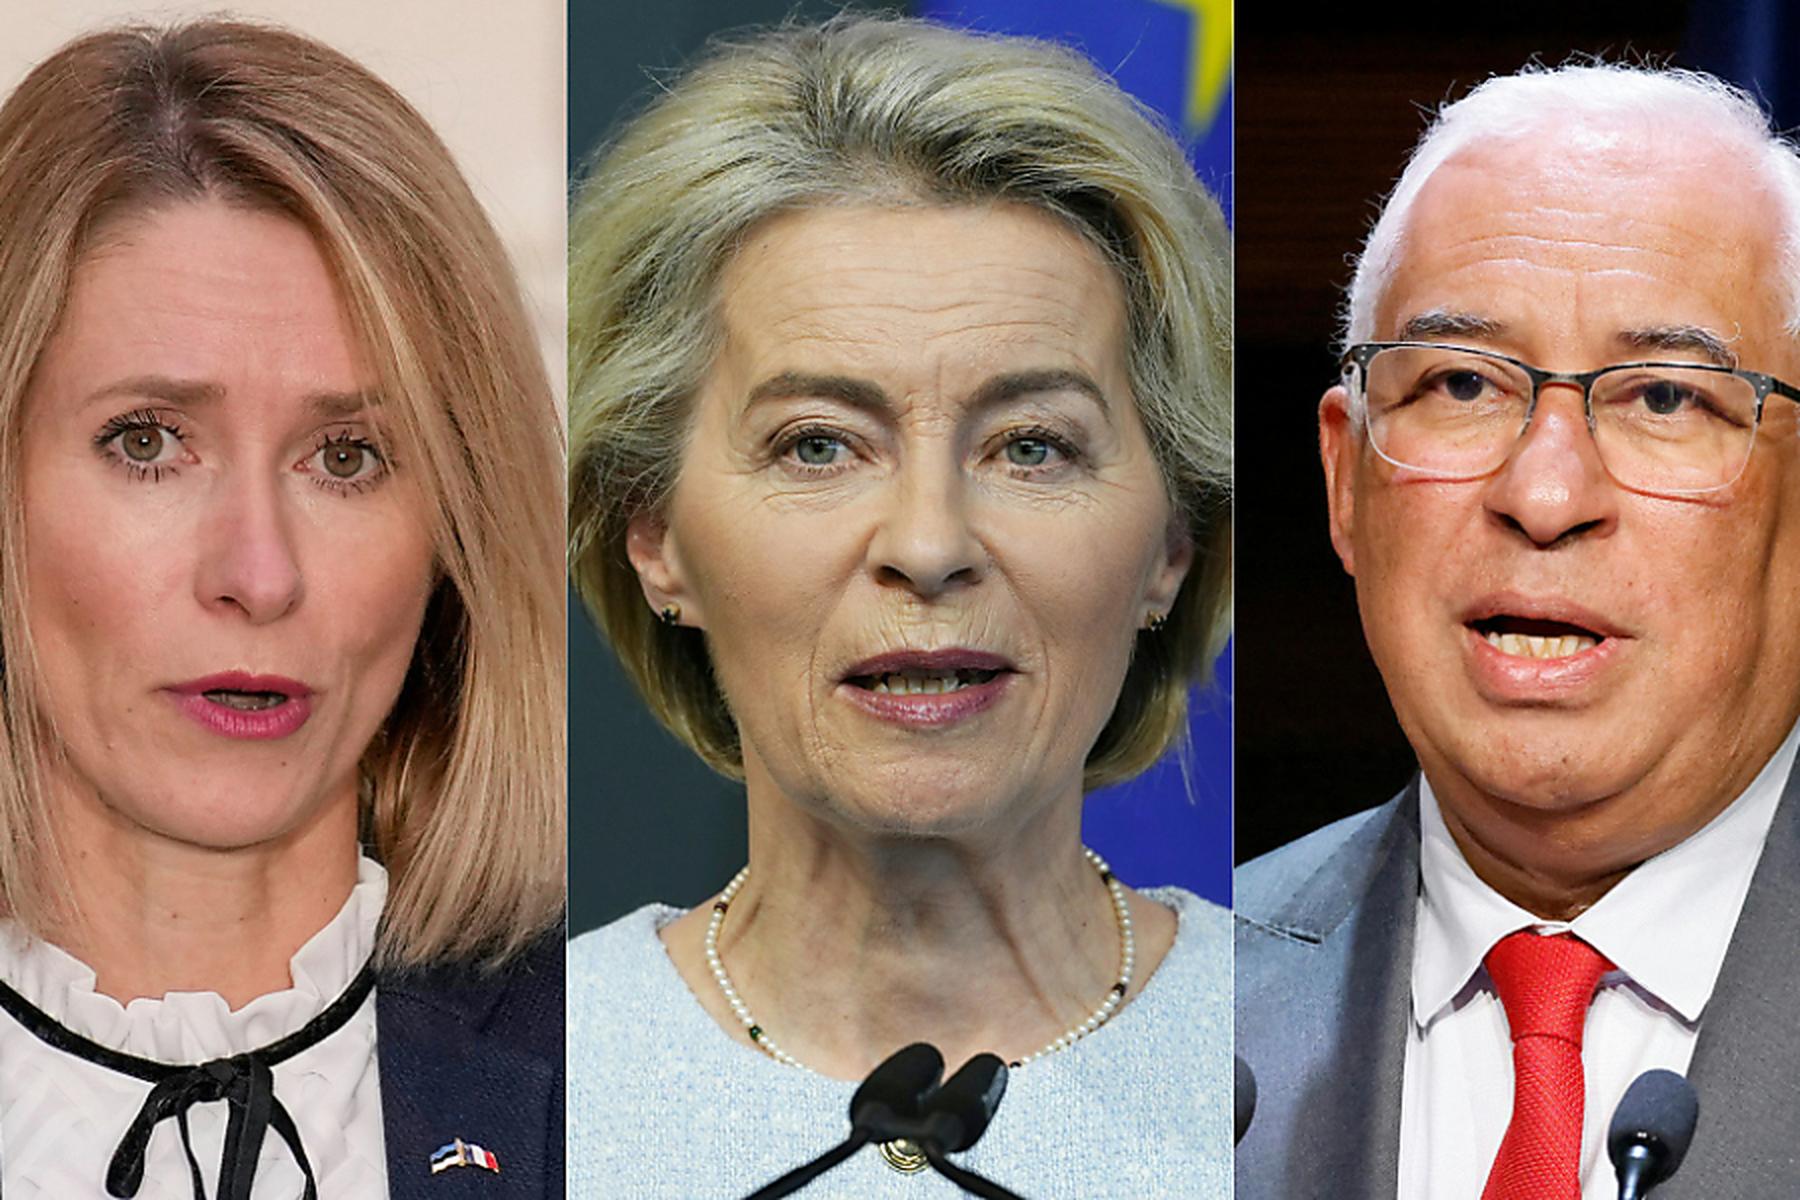 Brüssel/Straßburg: EU-Gipfel fixiert Topjobs für von der Leyen, Costa, Kallas